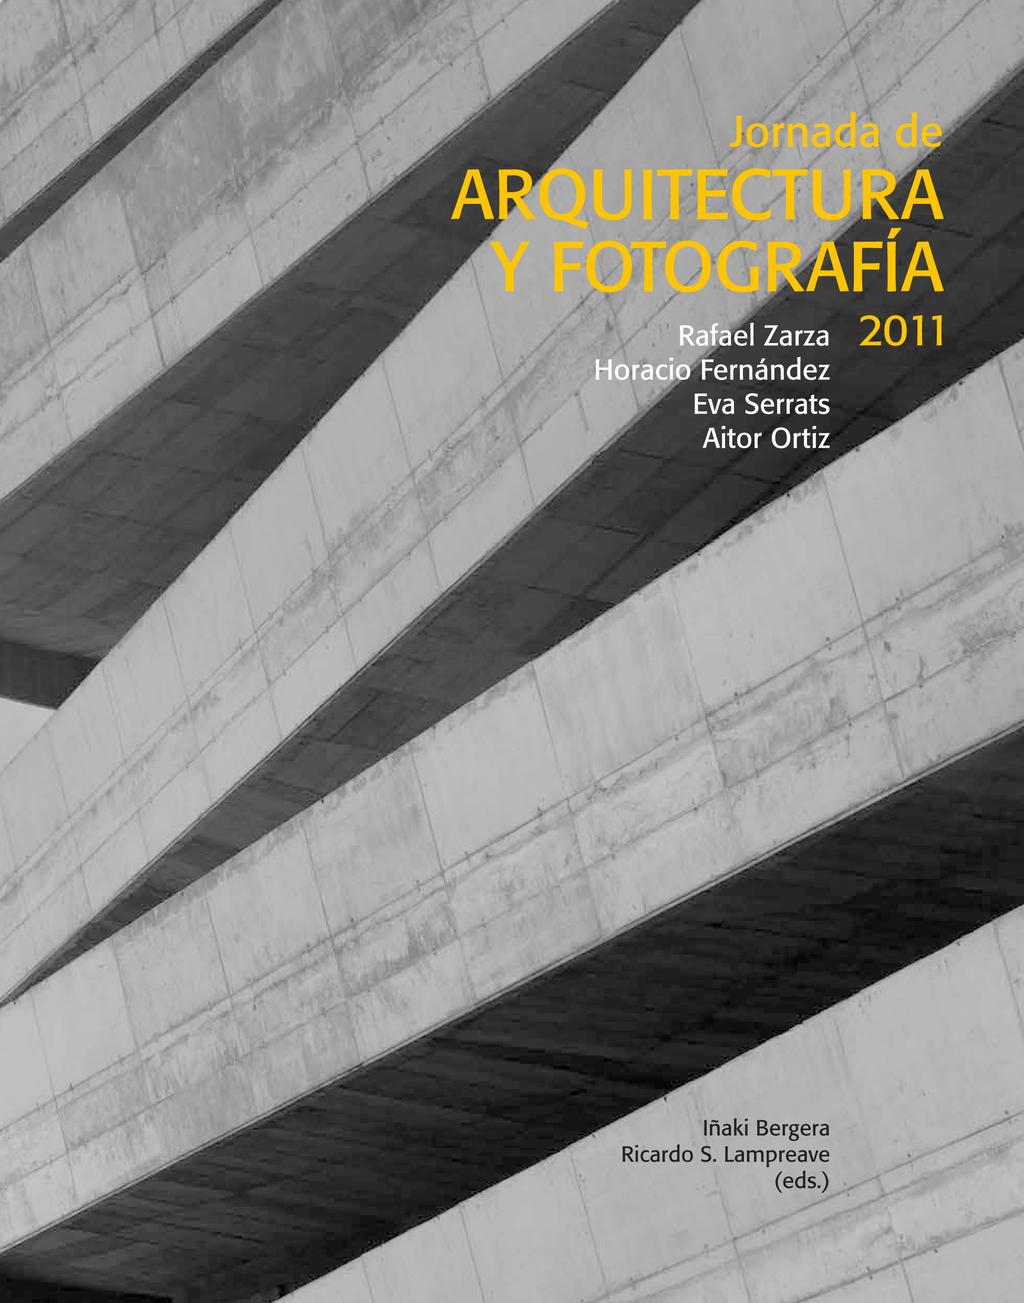 ) (2011), Zaragoza, Institución Fernando el Católico, 127 pp.